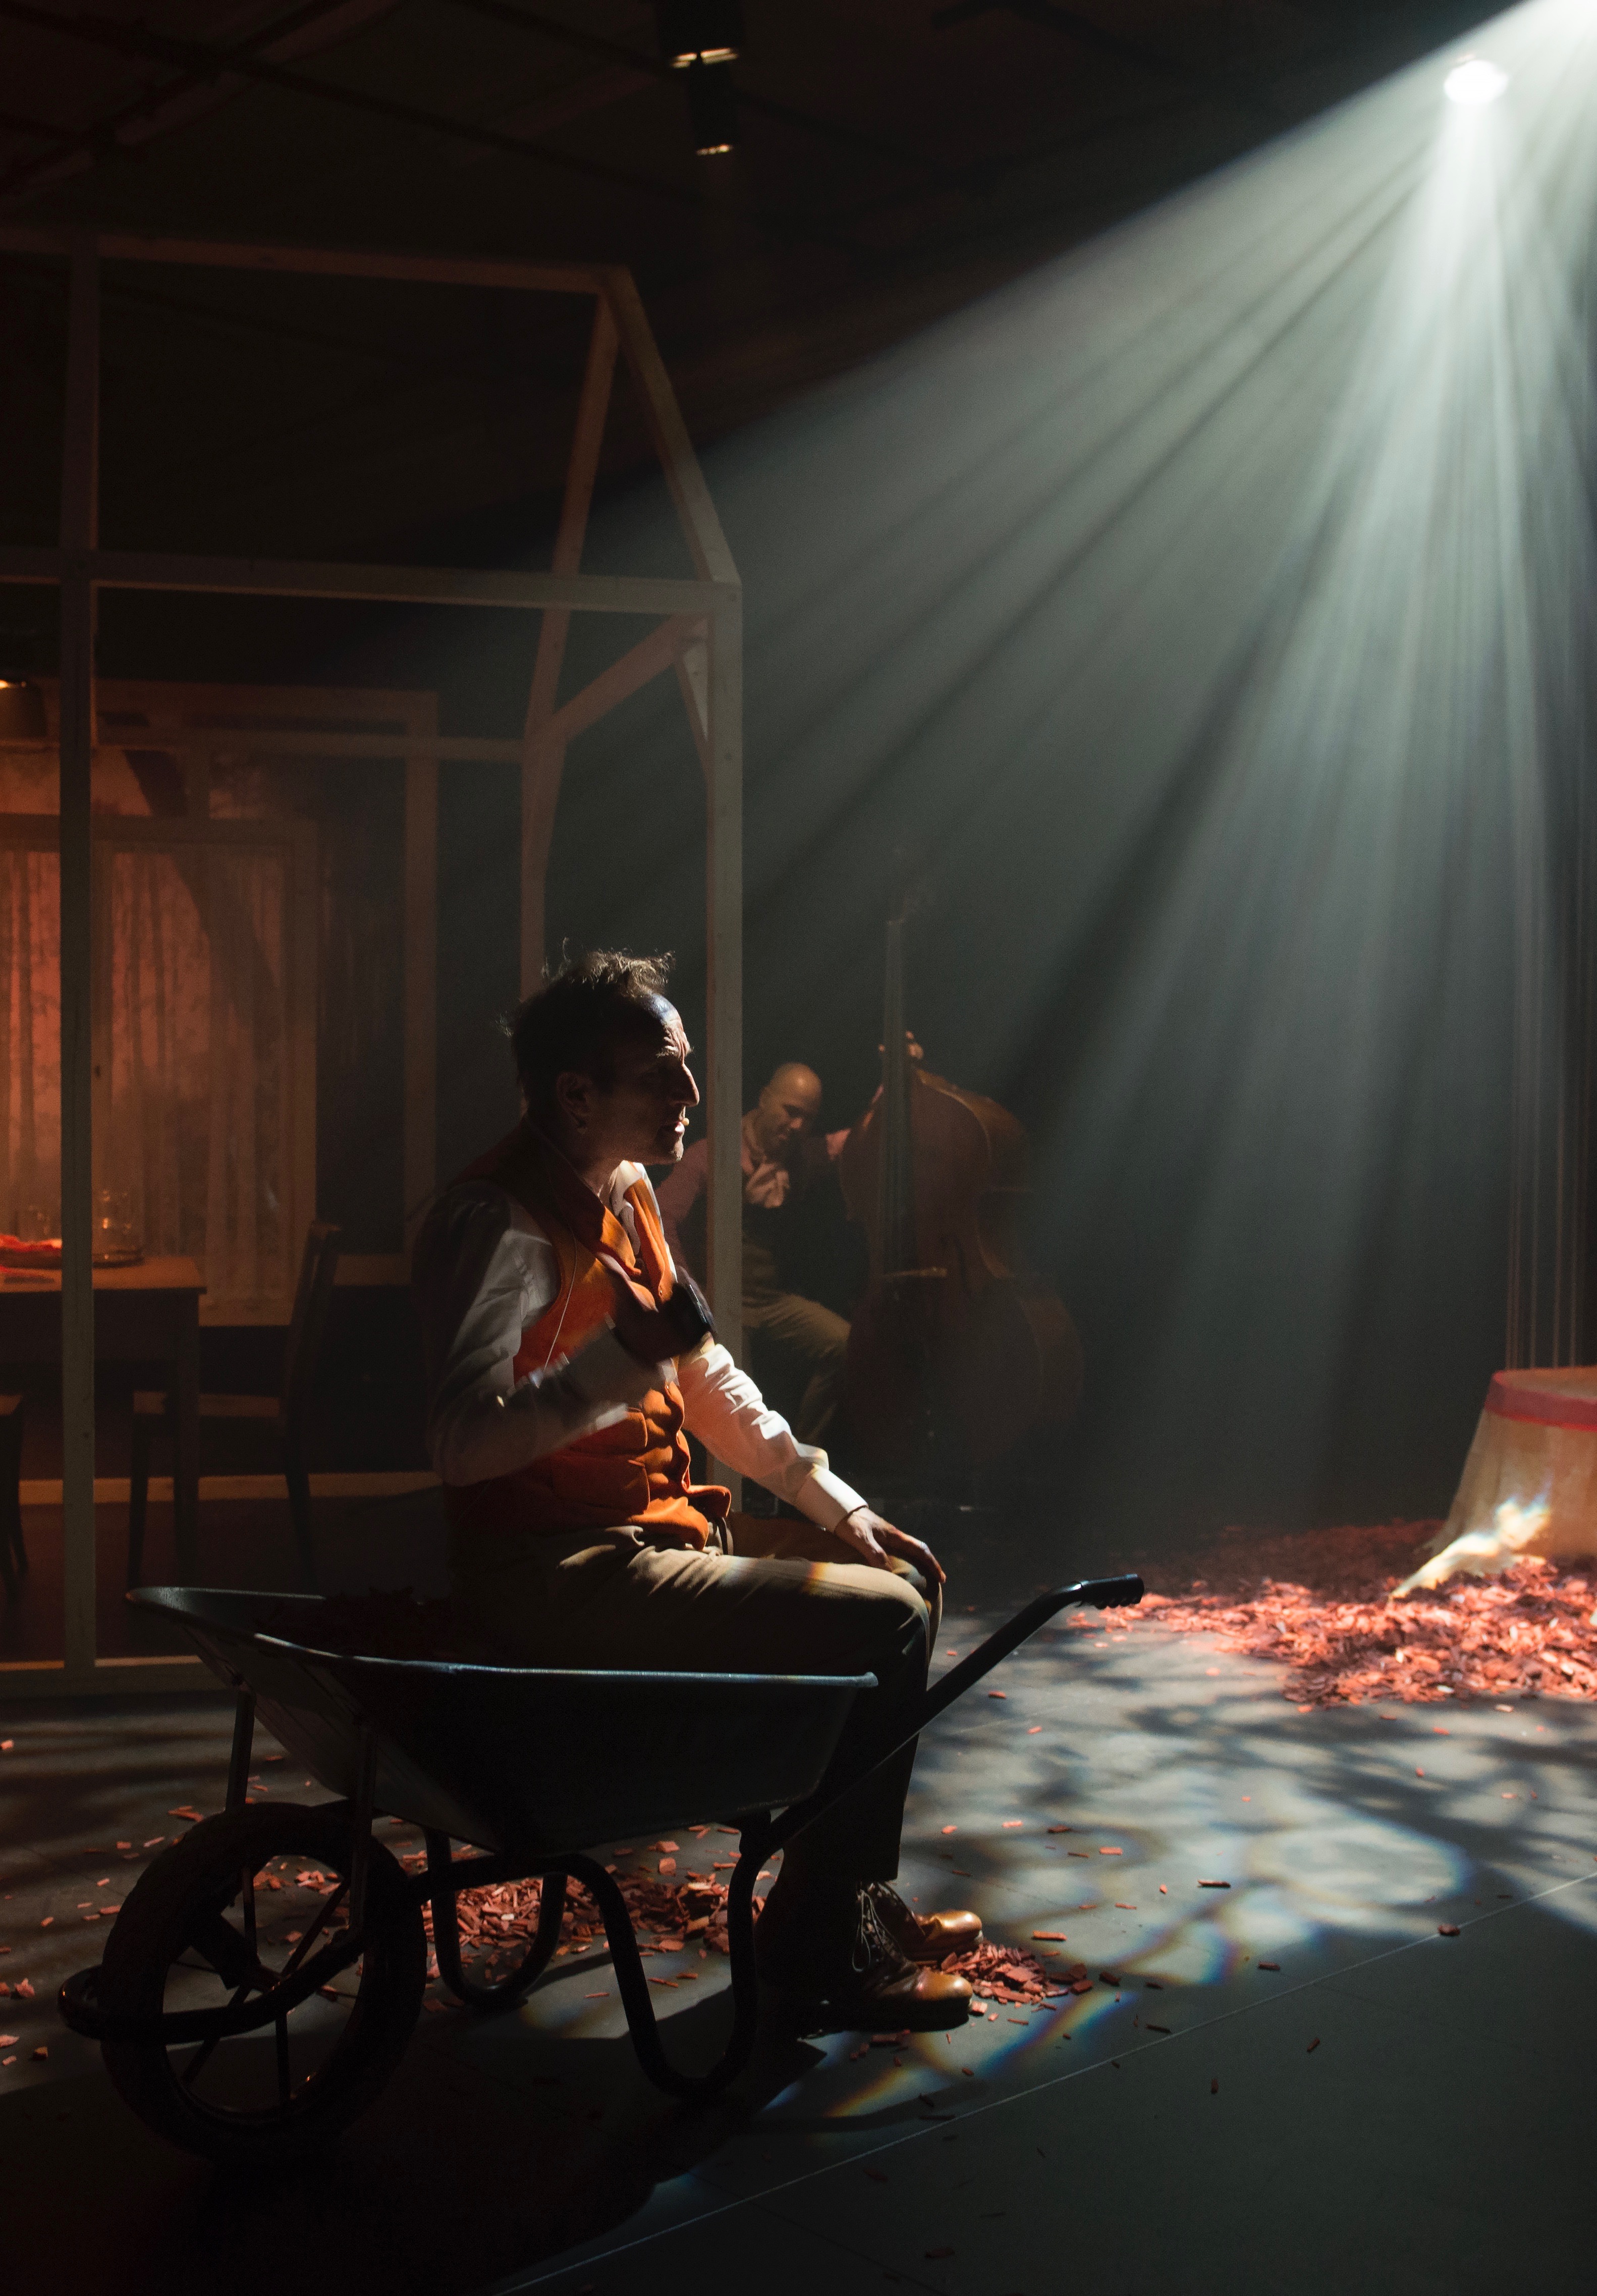 Sur une scène de théâtre un homme de profil est assis dans une brouette. Il porte un gilet orange. Une lumière vive éclaire le plateau devant lui.